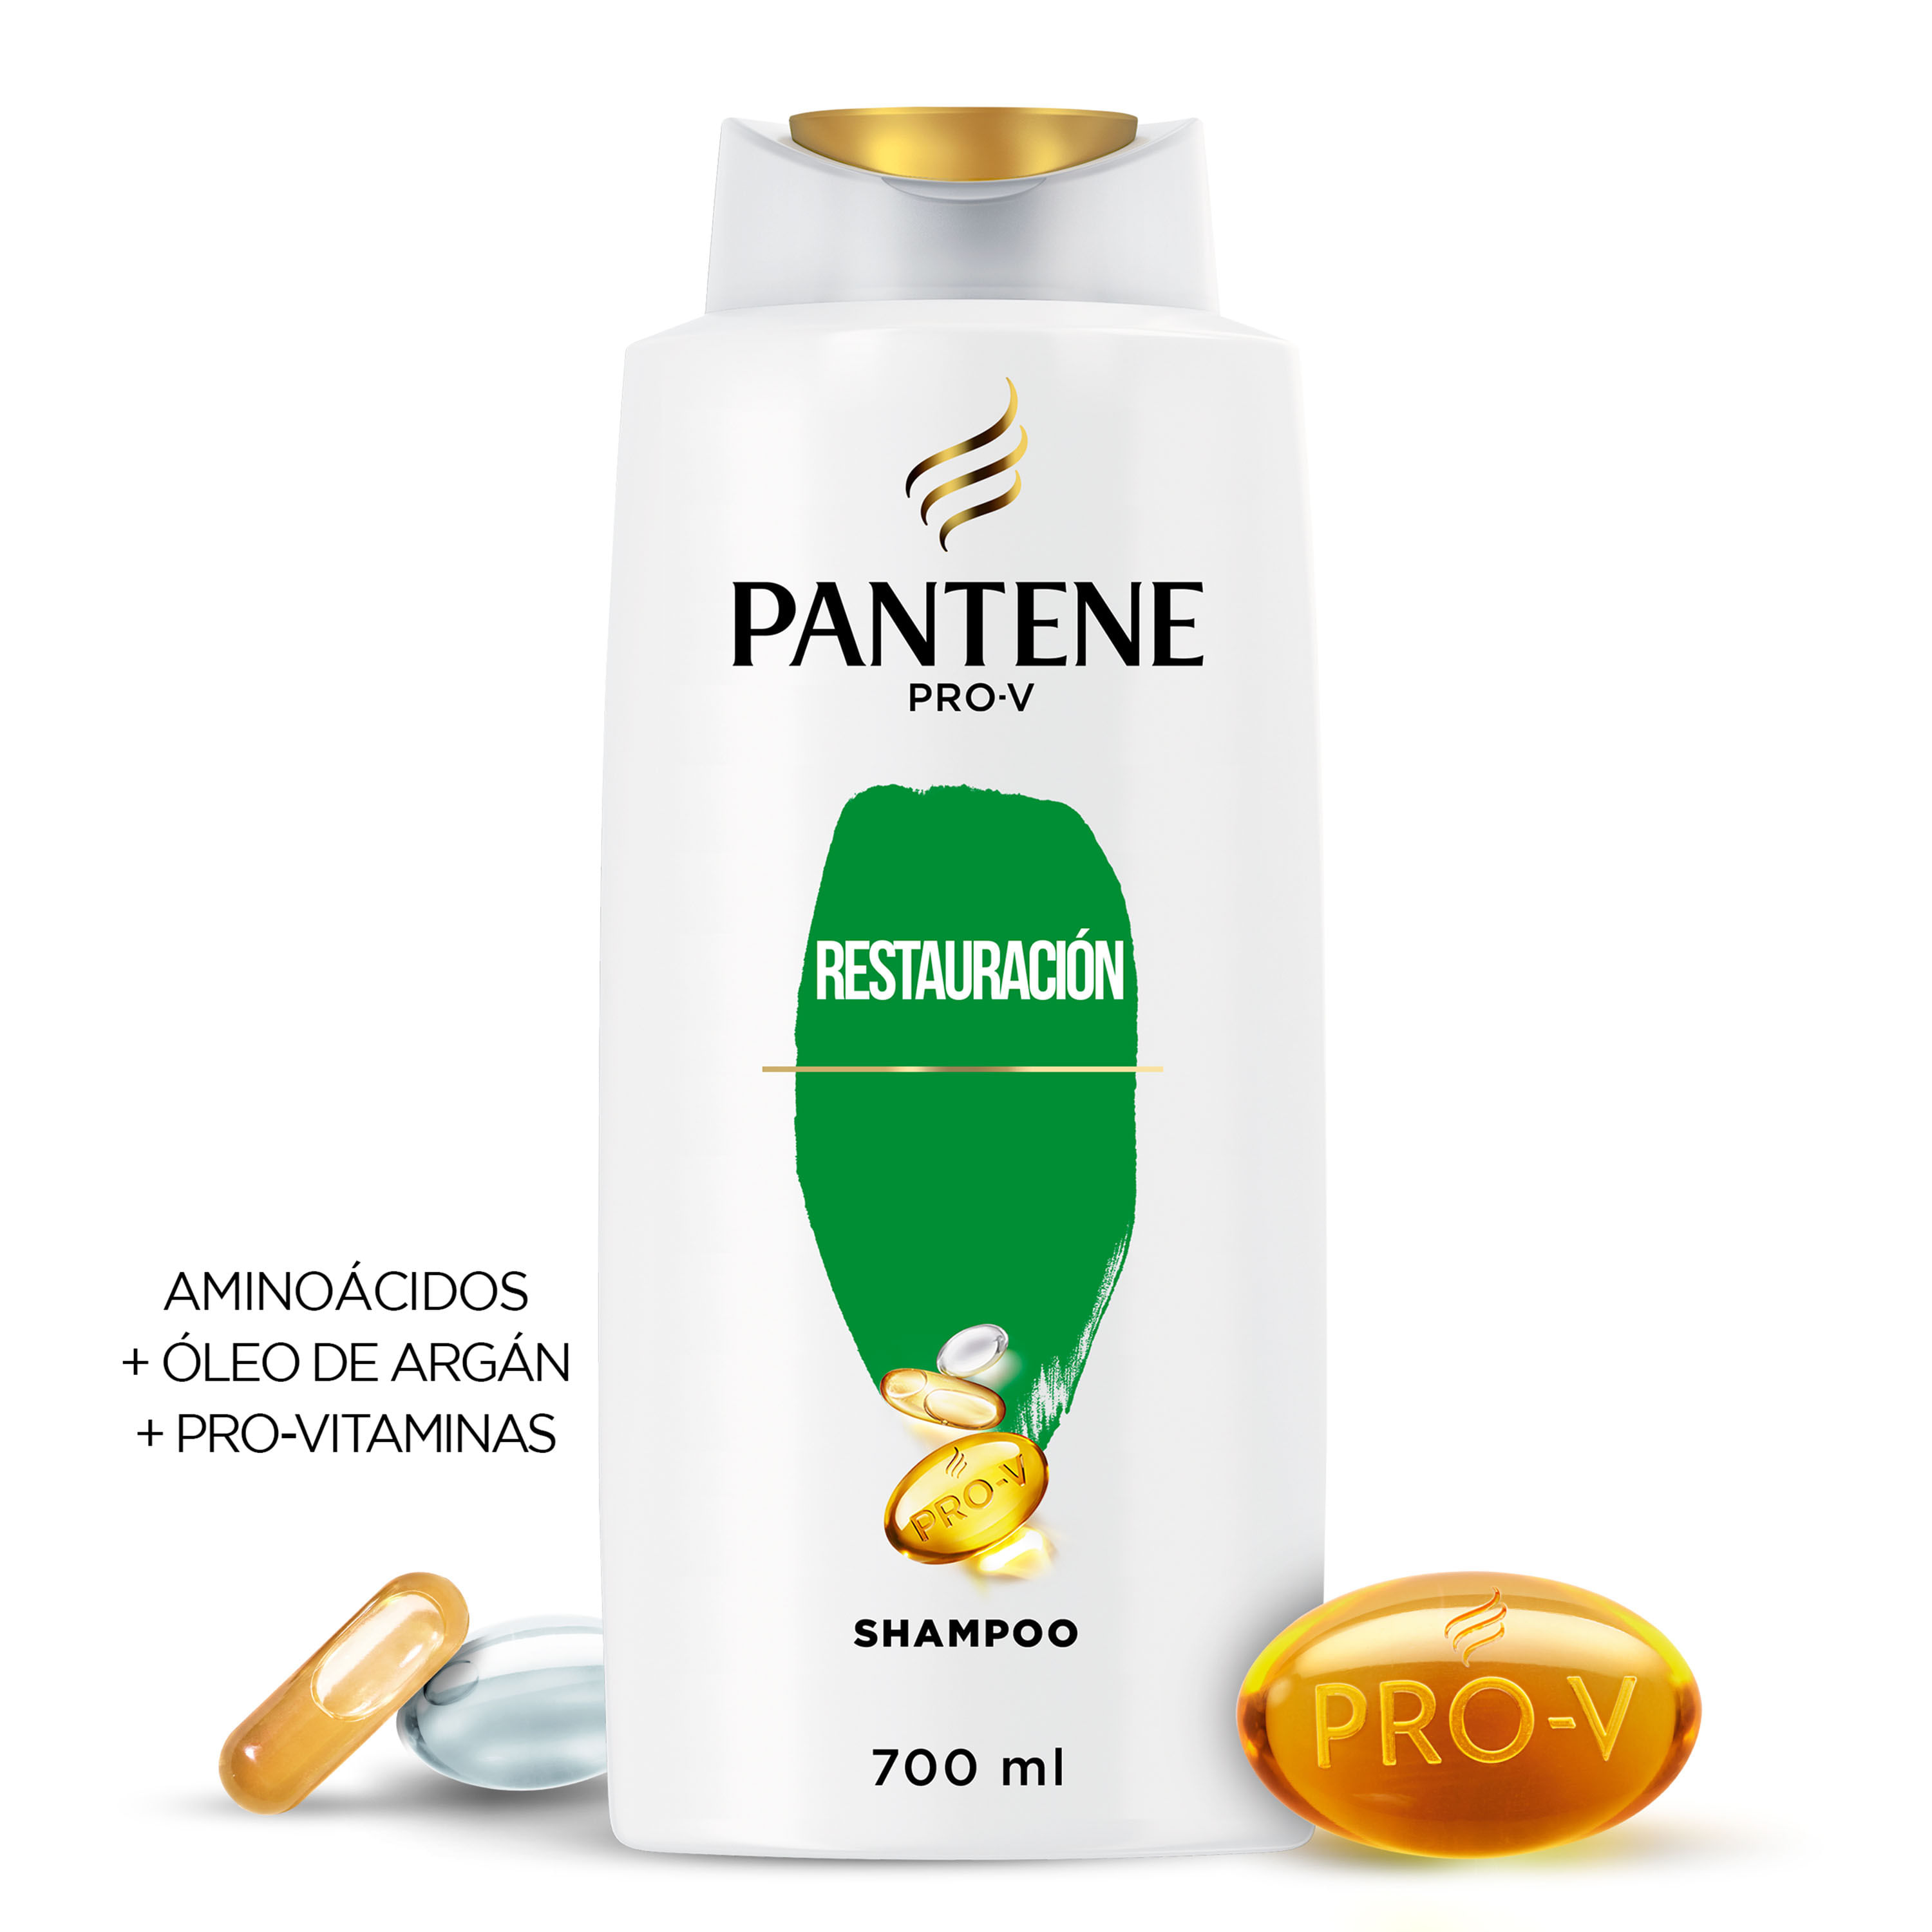 Shampoo-Pantene-Pro-V-Restauraci-n-700-ml-1-27282